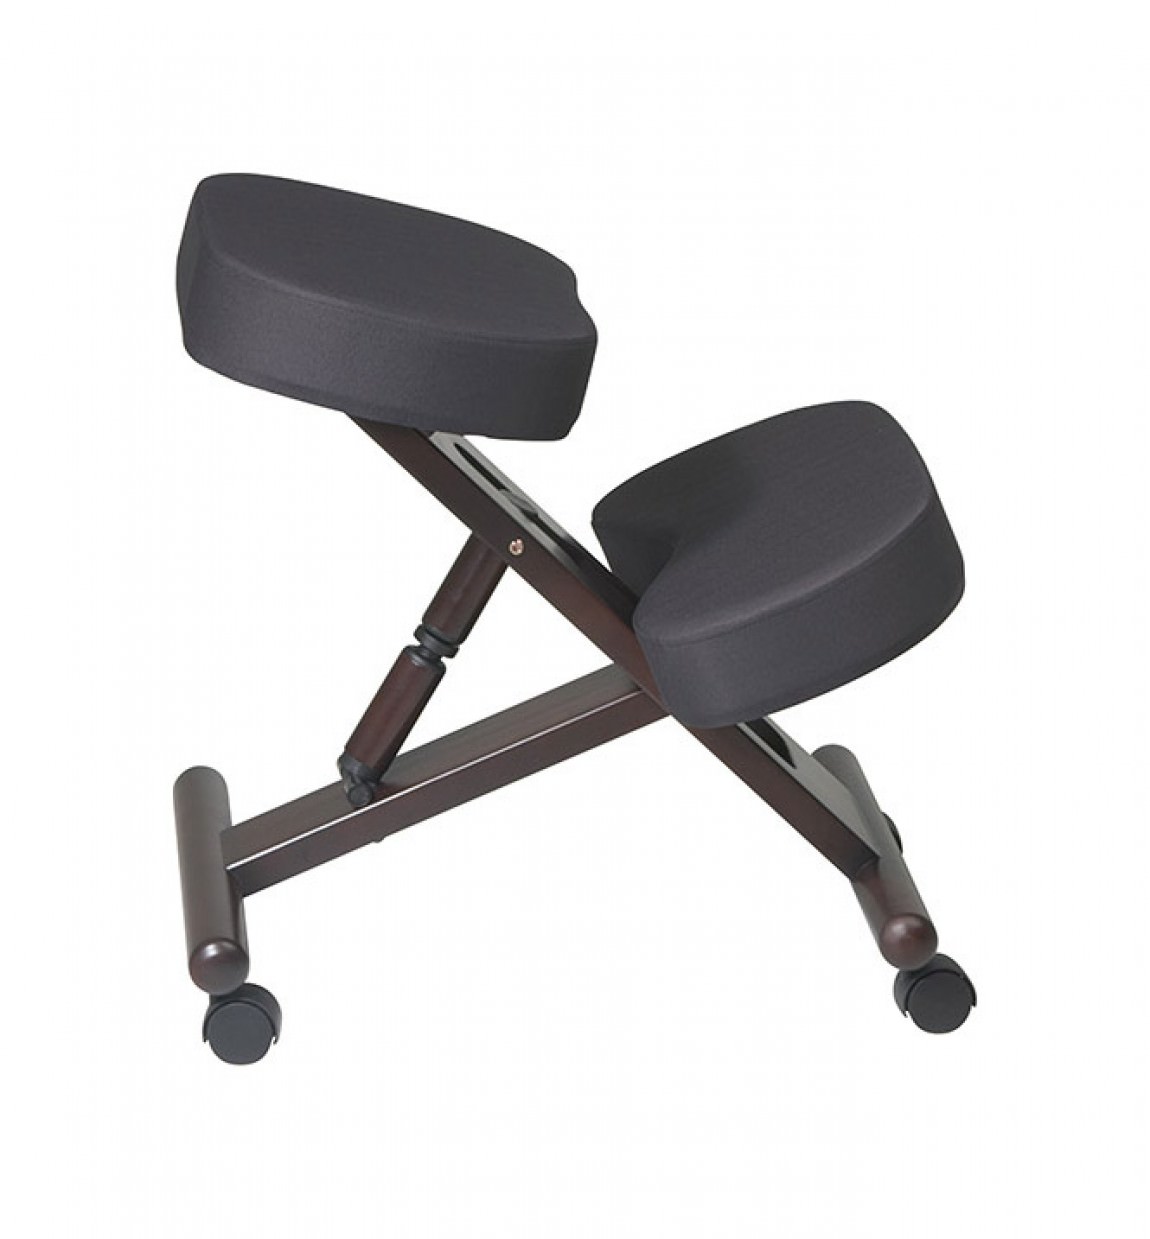 Kneeling stool chair